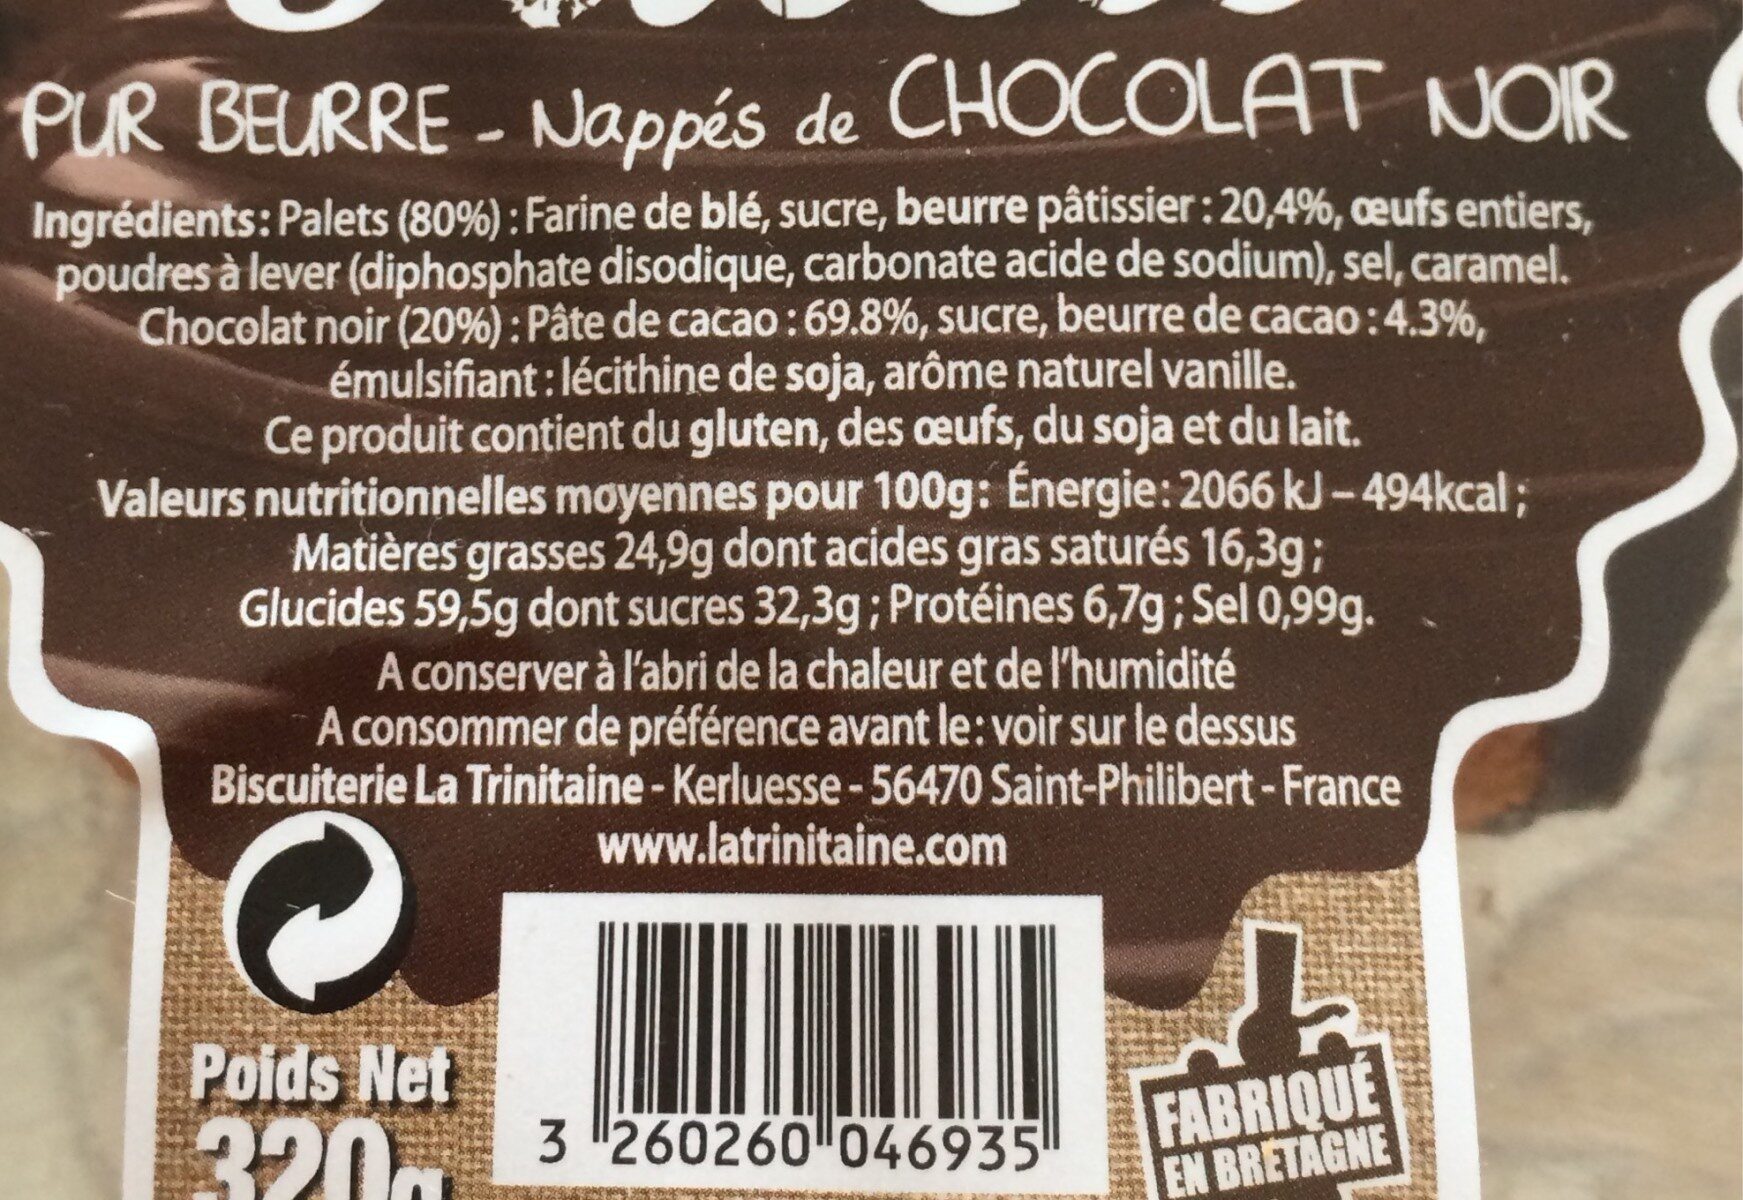 Palets pur beurre nappés de chocolat noir - Nutrition facts - fr